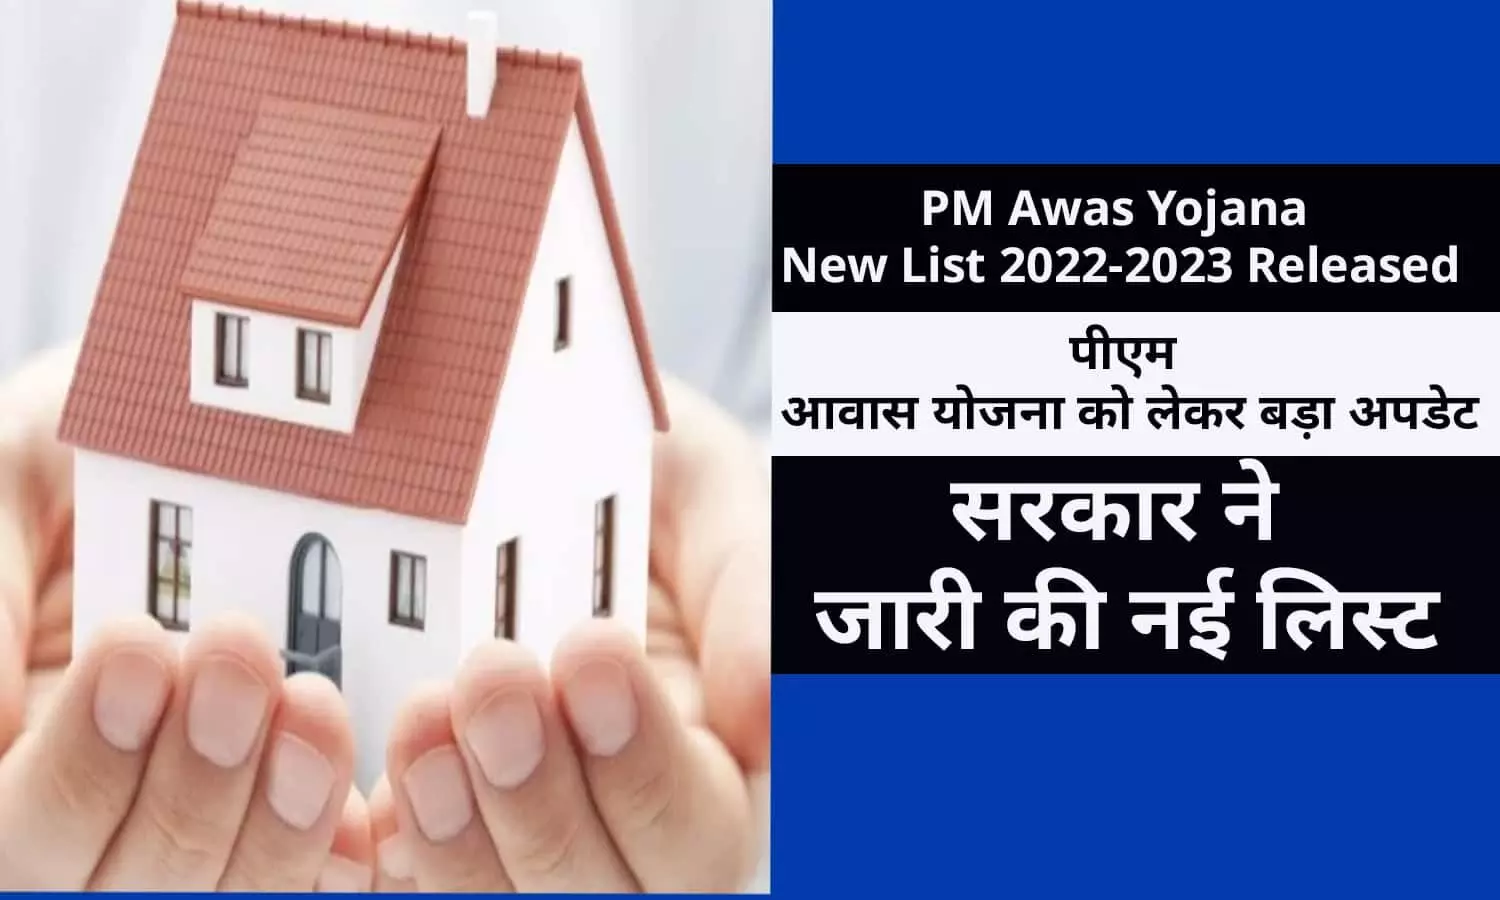 PM Awas Yojana New List 2022-2023 Released: पीएम आवास योजना को लेकर बड़ा अपडेट, सरकार ने जारी की नई लिस्ट, फटाफट देखे अपना नाम